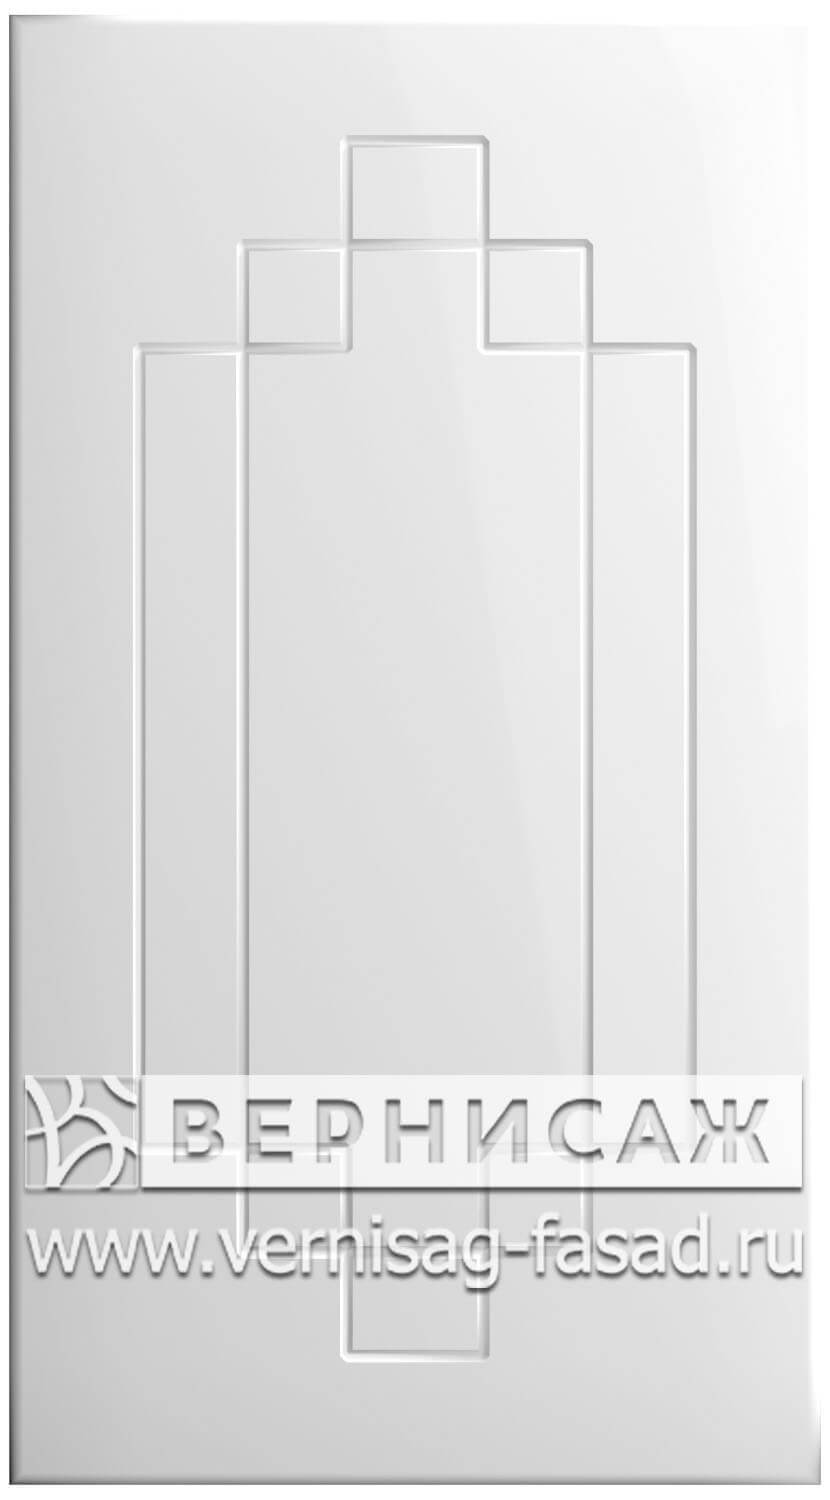  Фасады в пленке ПВХ, Фрезеровка № 37, цвет Белый глянец